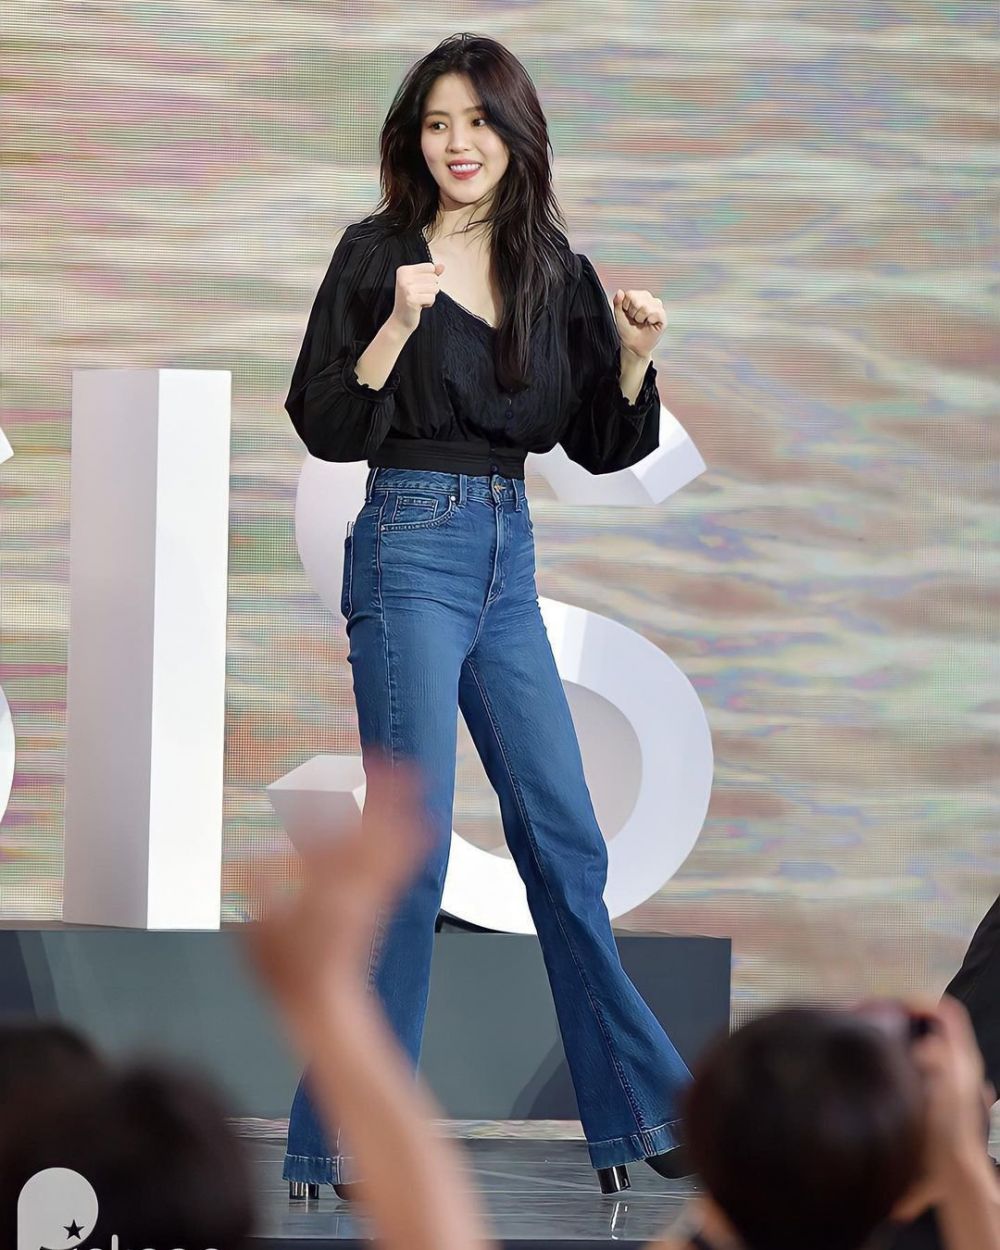 Phong cách diện quần jeans của Han So Hee: Phối đồ dịu dàng hay cá tính cũng đều đẹp xuất sắc - Ảnh 2.